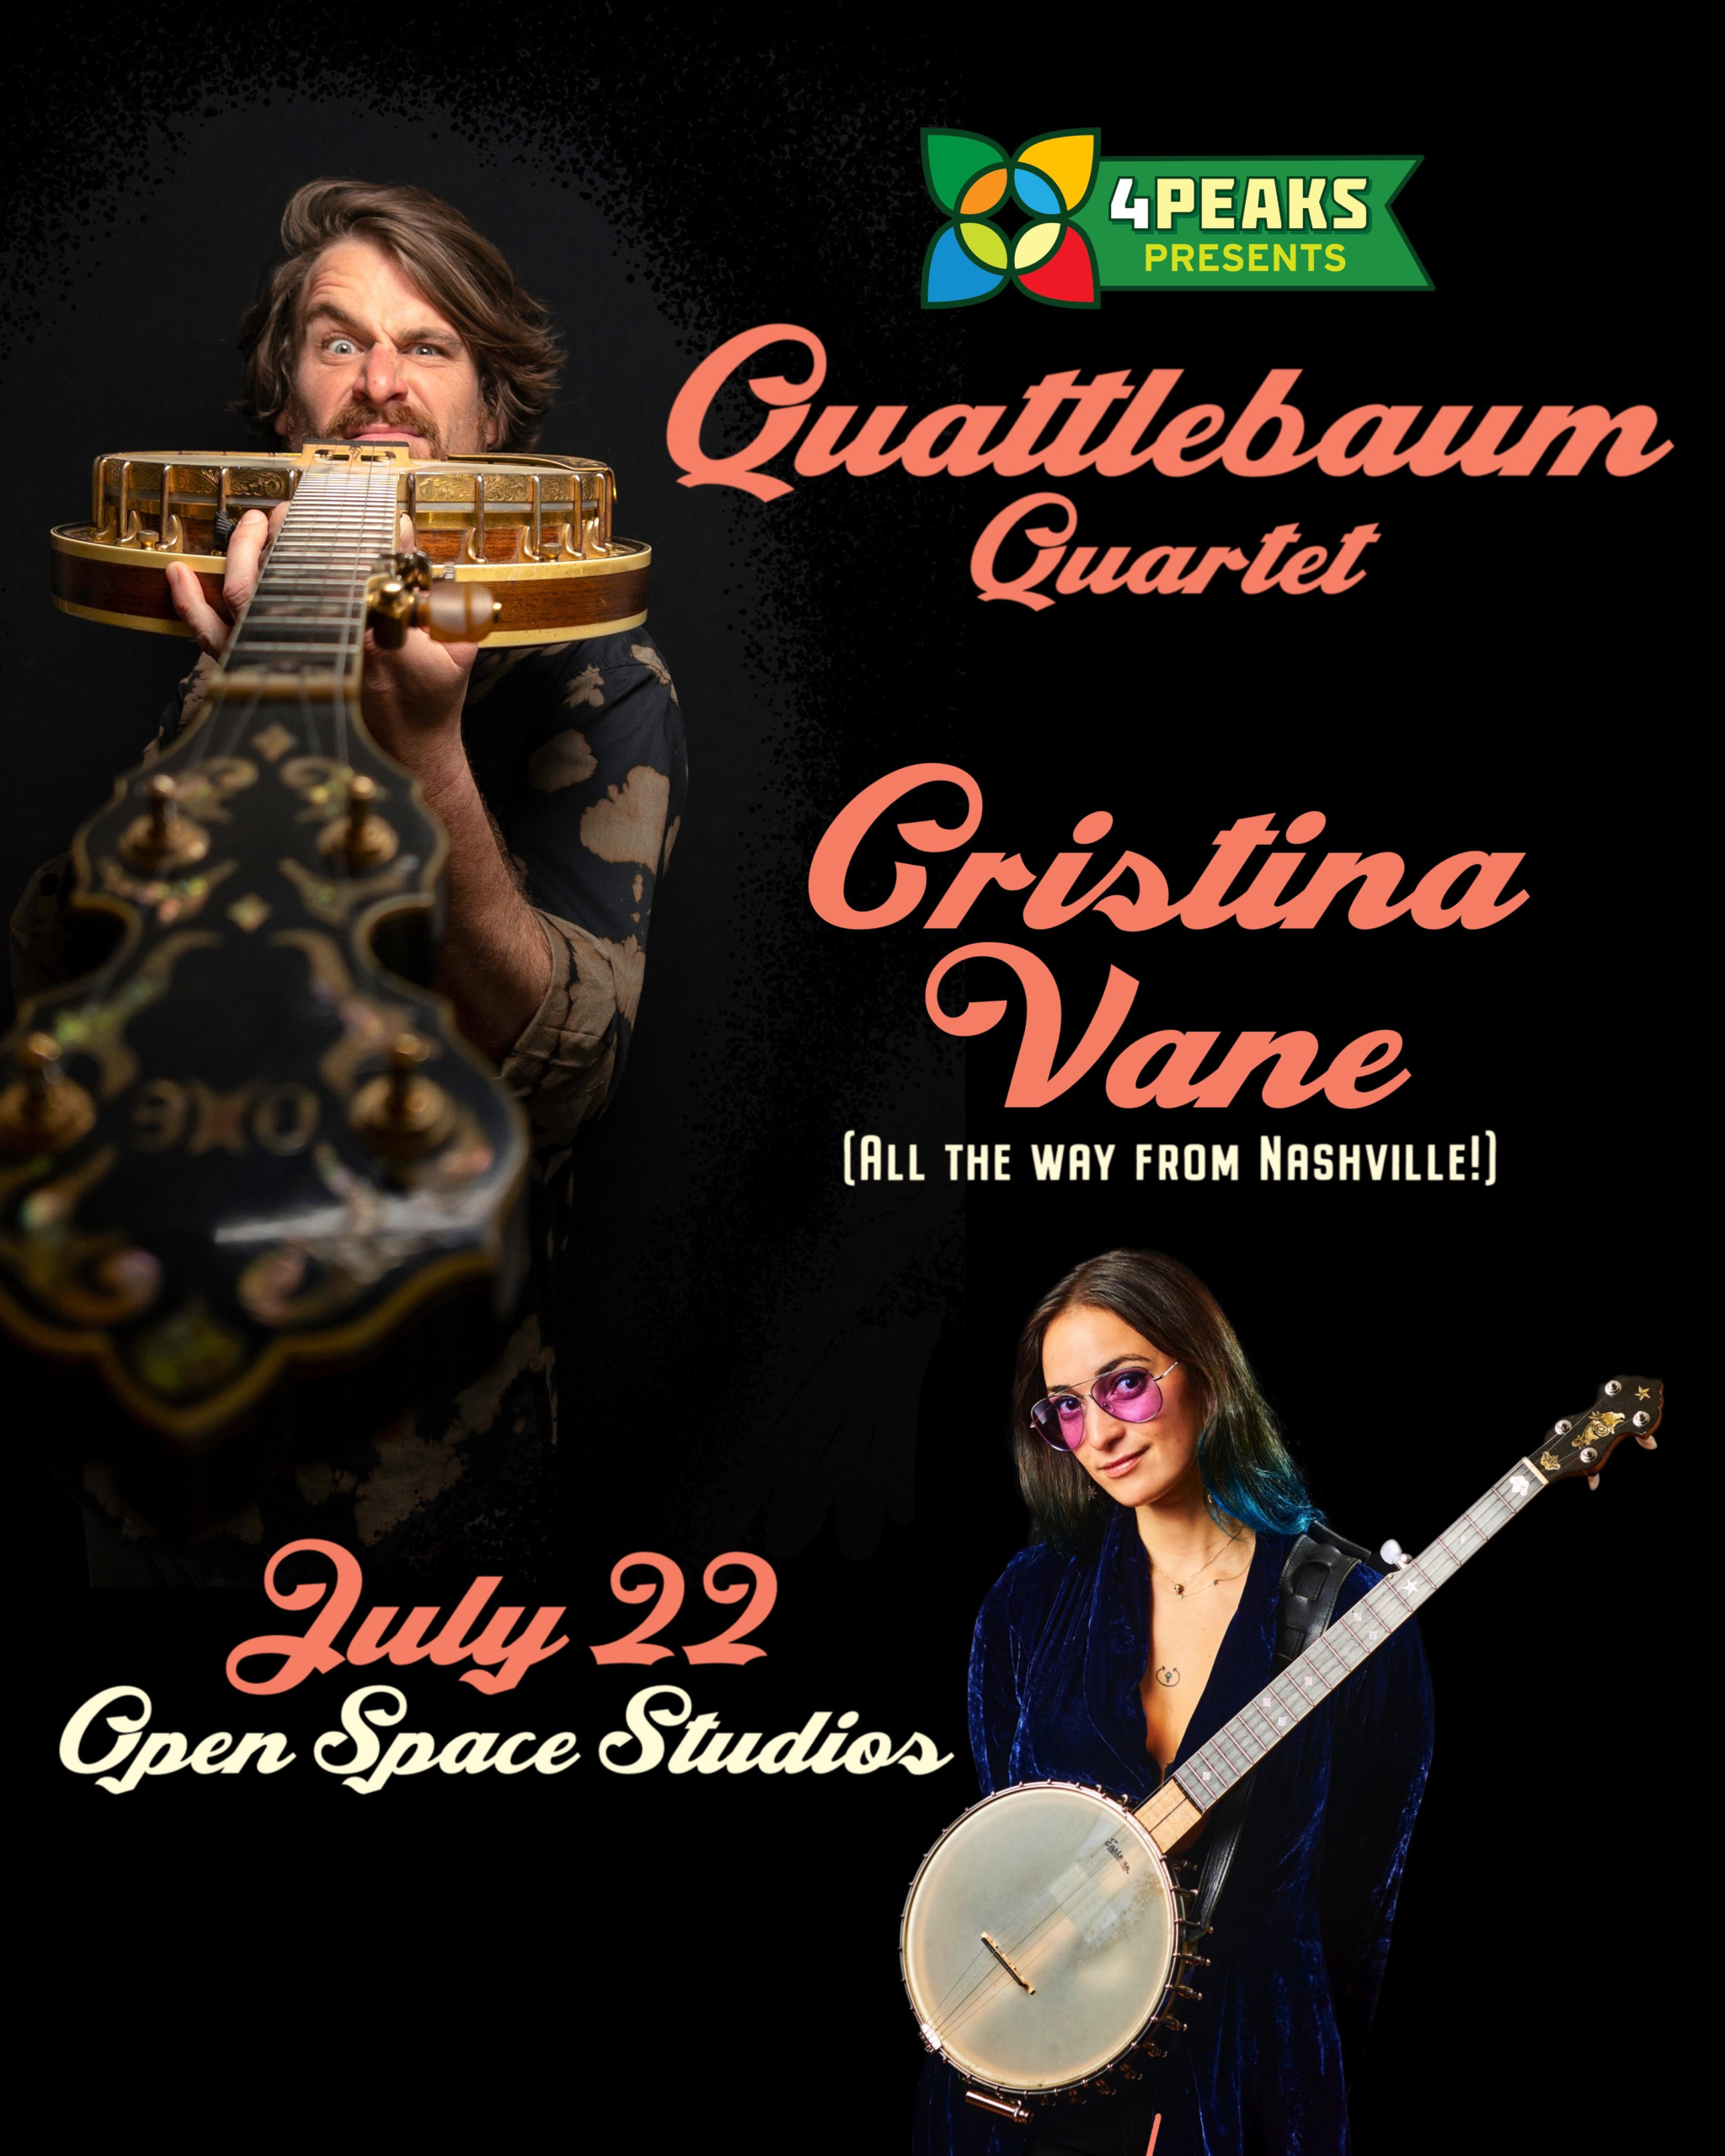 Quattlebaum Quartet & Cristina Vane Trio